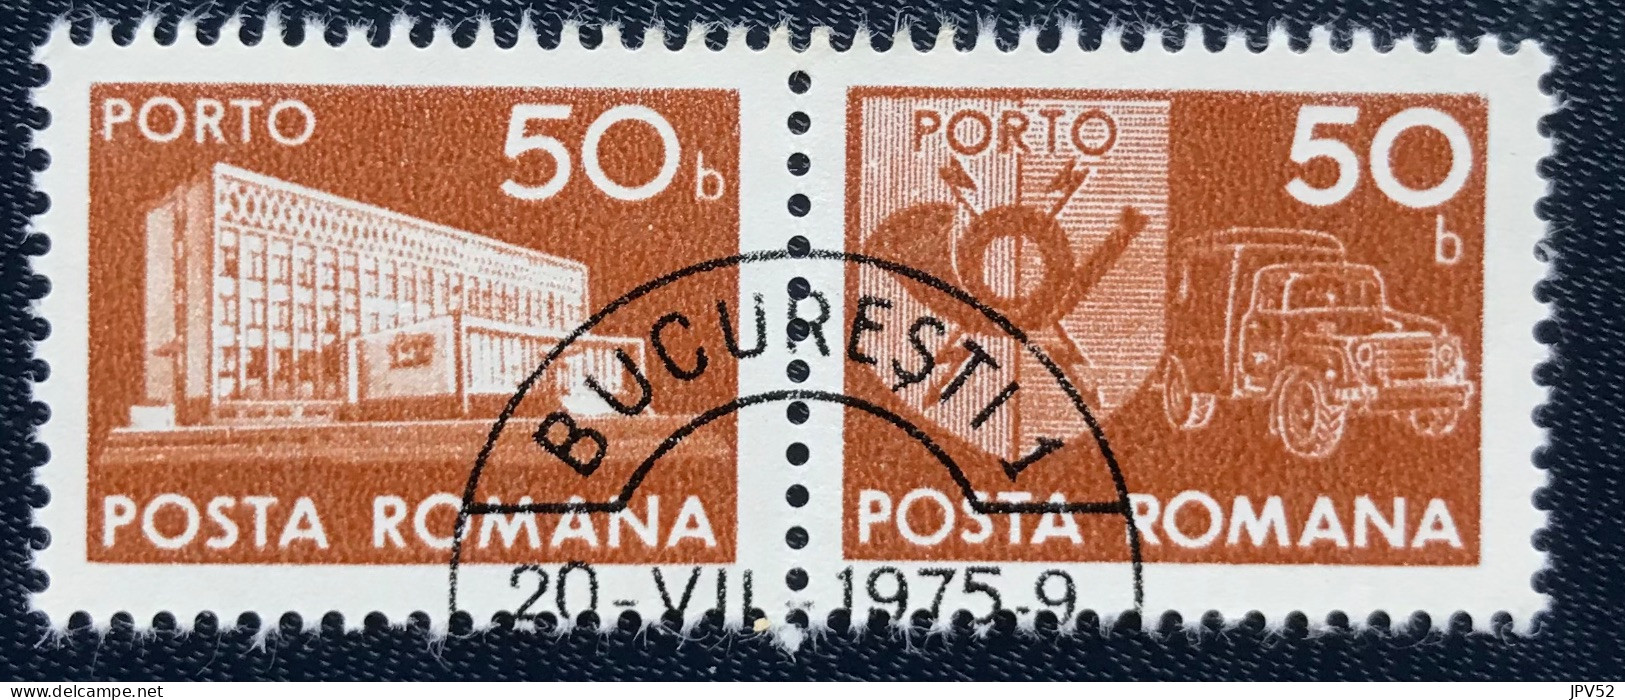 Romana - Roemenië - C14/55 - 1974 - (°)used - Michel 123 - Postkantoor & Postembleem & Postvoertuig - BUCURESTI - Postage Due